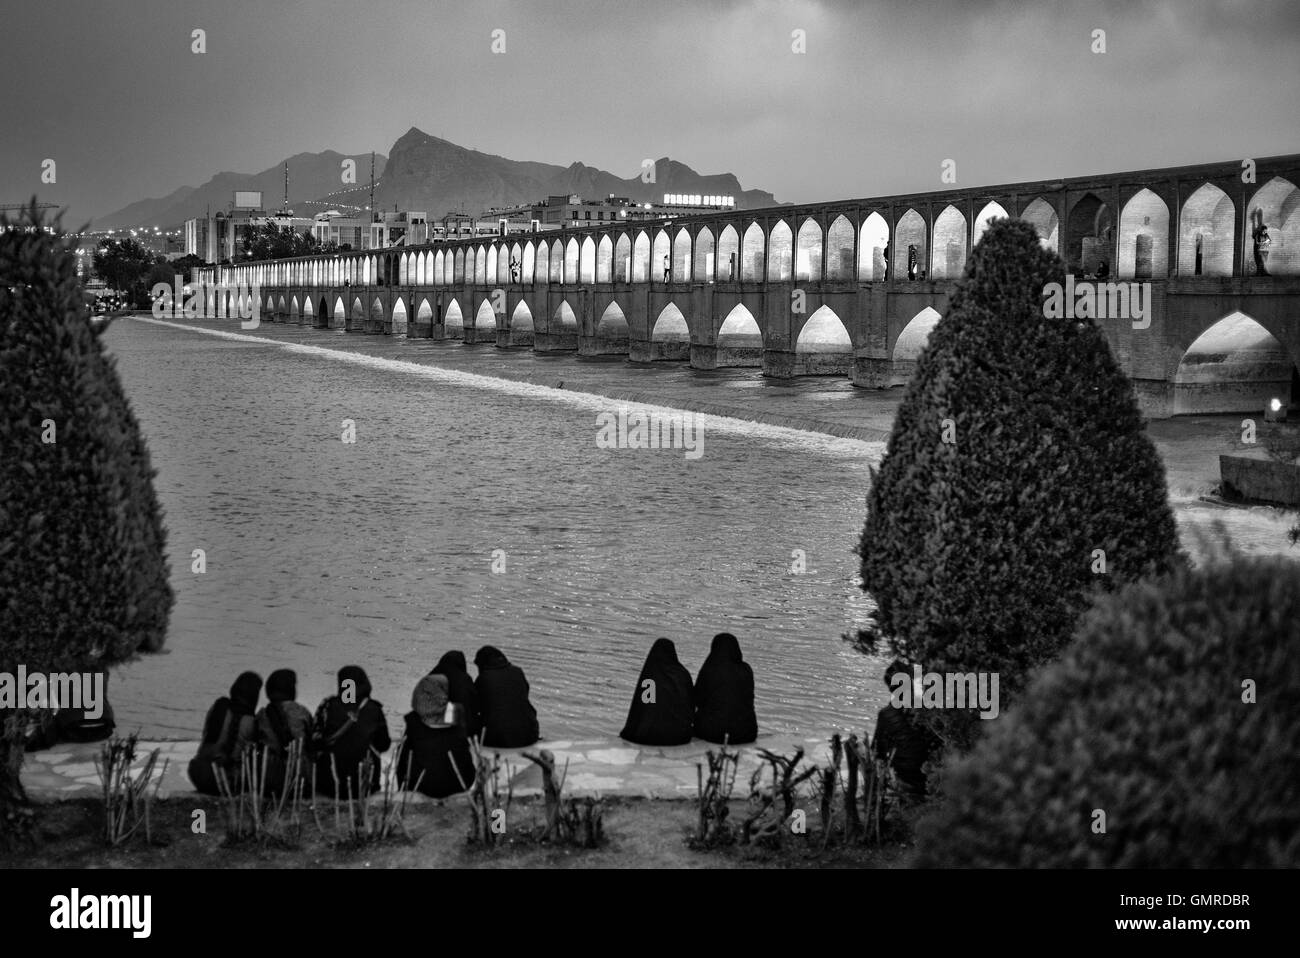 Allāhverdi Khan populairement connu sous le nom de pont Si-O-seh pol "Le pont de trente-trois travées" est l'un des 11 ponts d'Isfahan, Iran et le plus long pont sur la rivière Zayandeh avec la longueur totale de 297,76 mètres (976,9 pieds). Il est hautement classé comme étant l'un des exemples les plus célèbres de la conception de ponts safavides. Monochrome. Banque D'Images